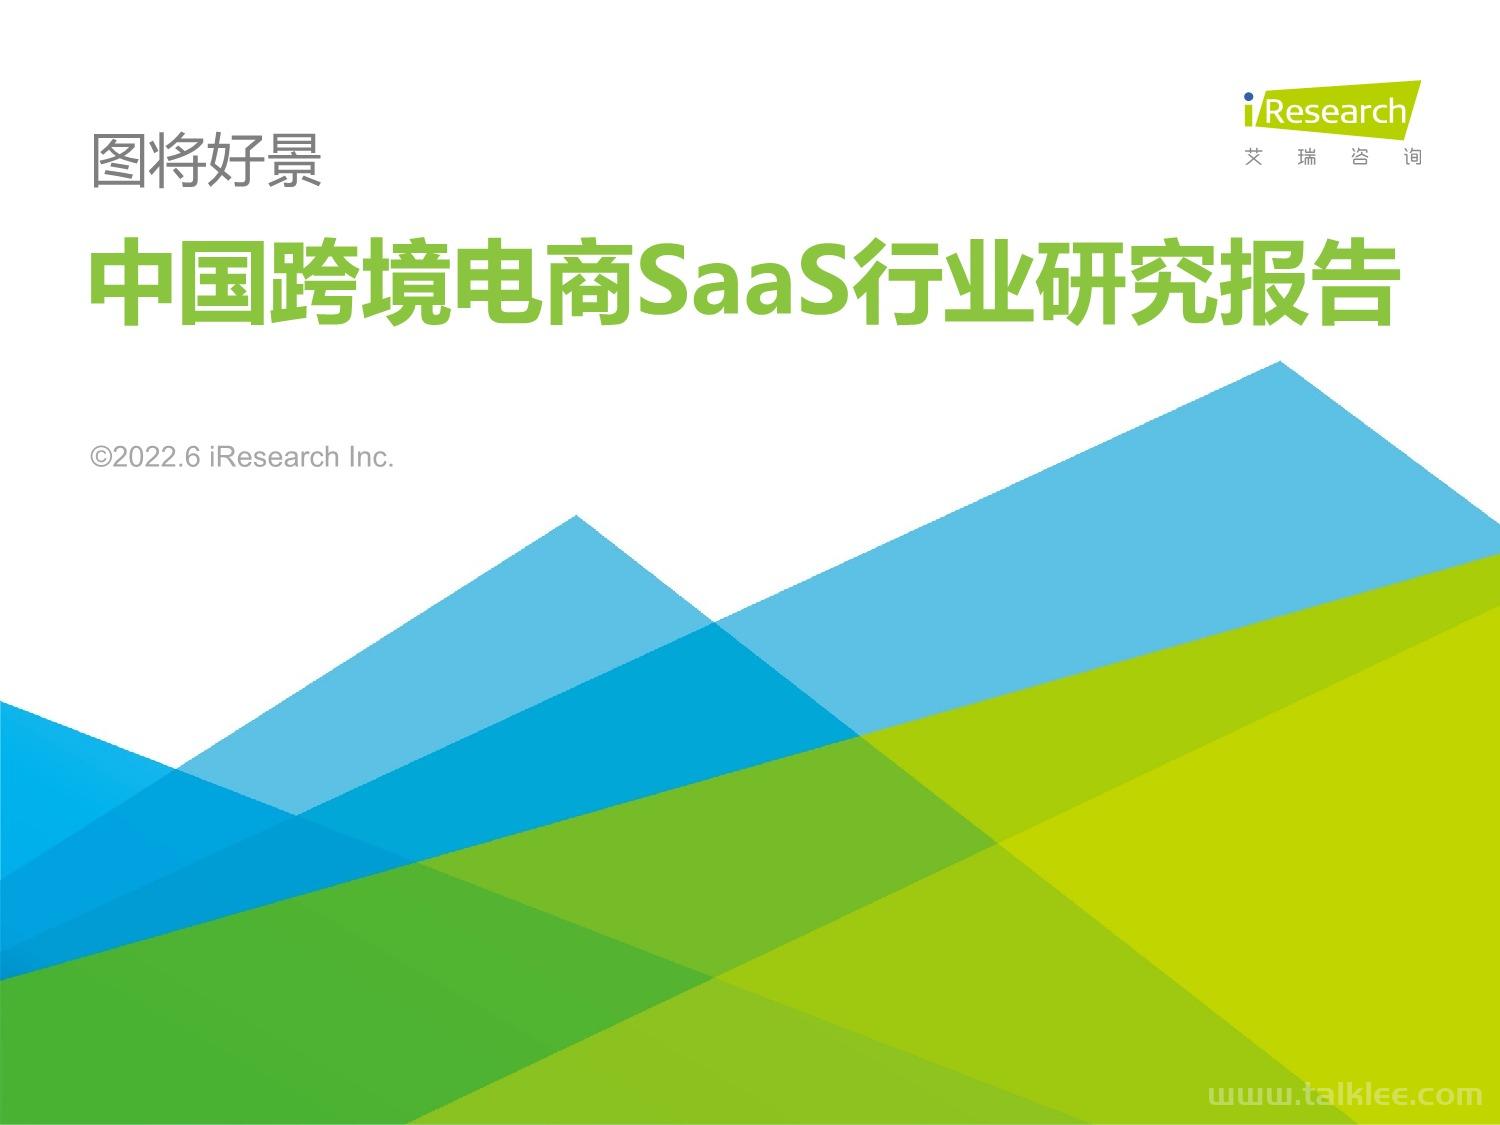 「艾瑞咨询」 中国跨境电商SaaS行业研究报告.pdf